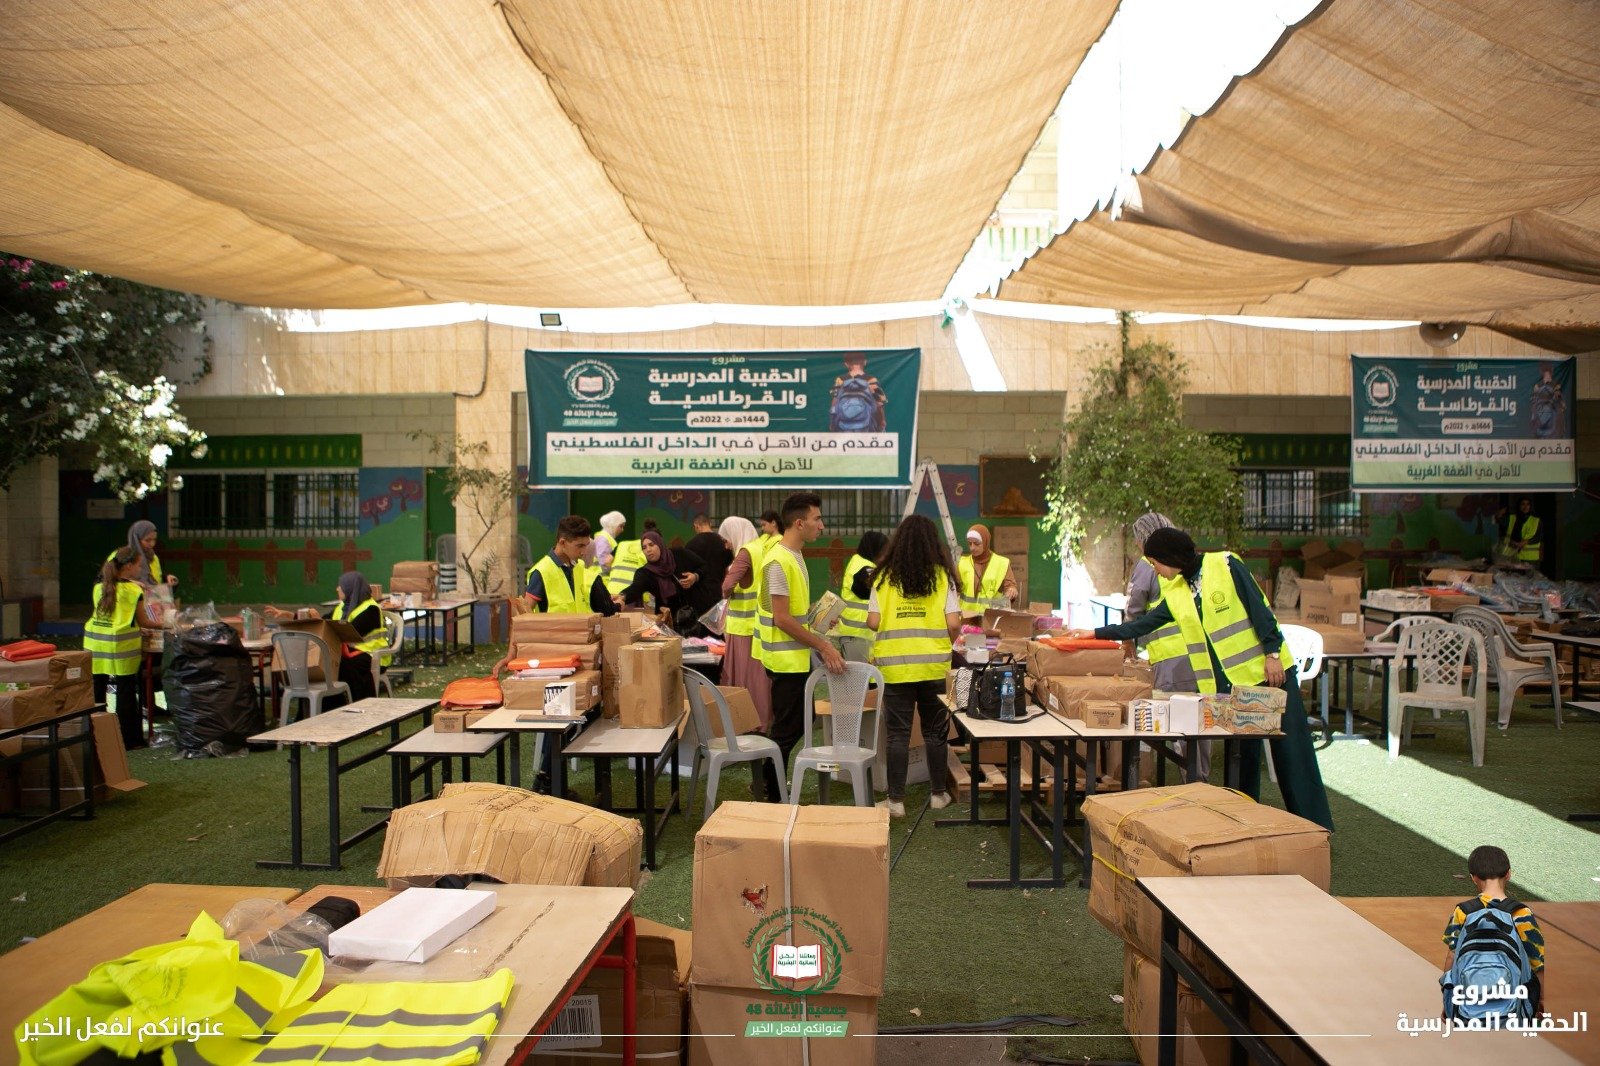 الإغاثة48 تجهّز 5000 حقيبة مدرسية بقرطاسيتها لتوزيعها على الطلاب المحتاجين في الضفة-5